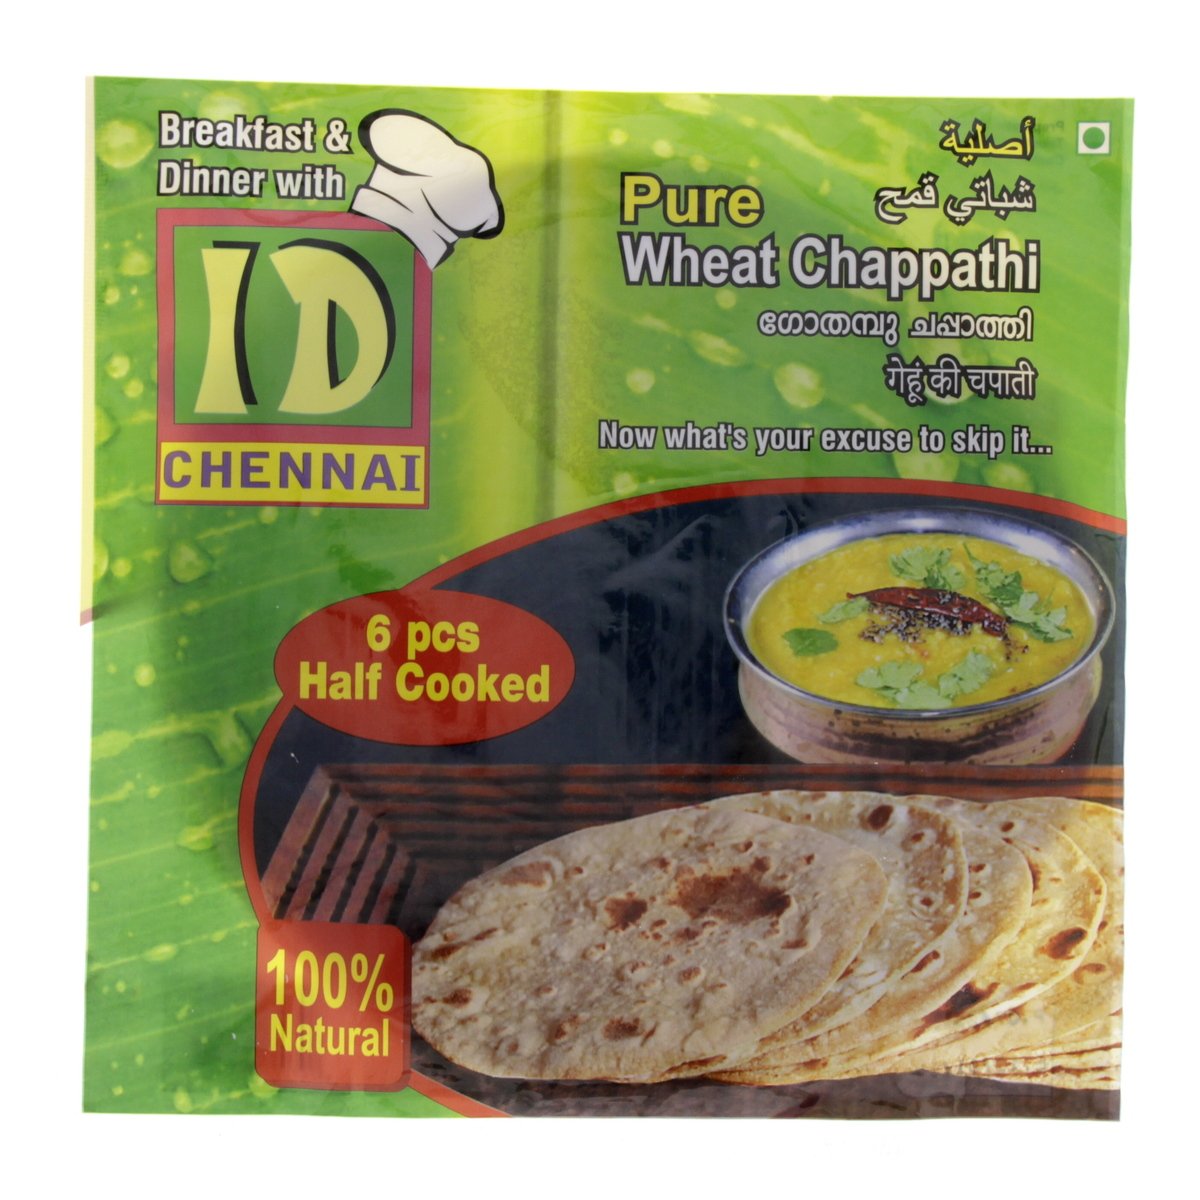 ID Chennai Pure Wheat Chappathi 6 pcs